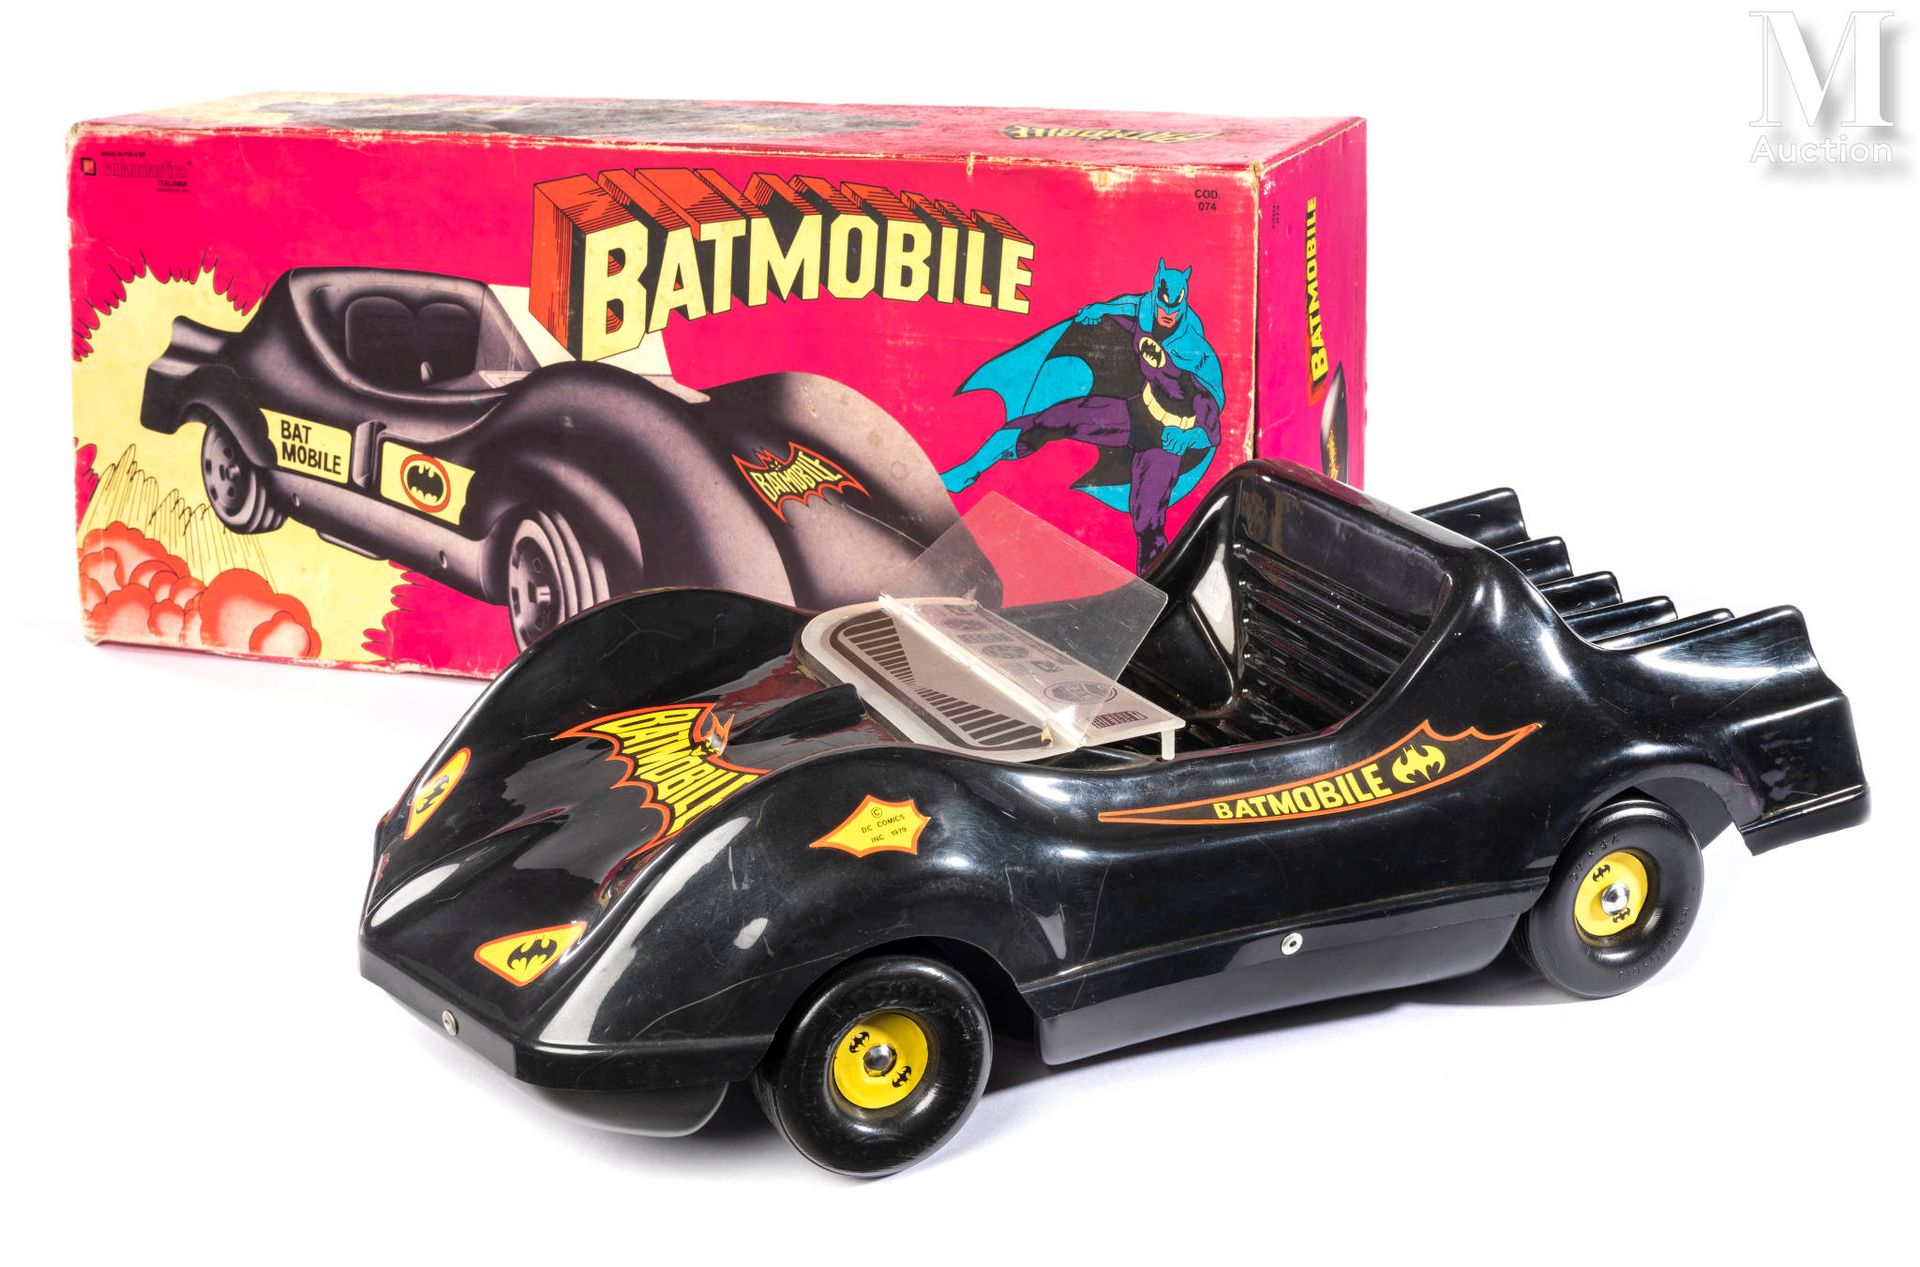 FABIANPLASTICA "Batmobile



1979

Veicolo in scatola originale FR.

(scatola us&hellip;